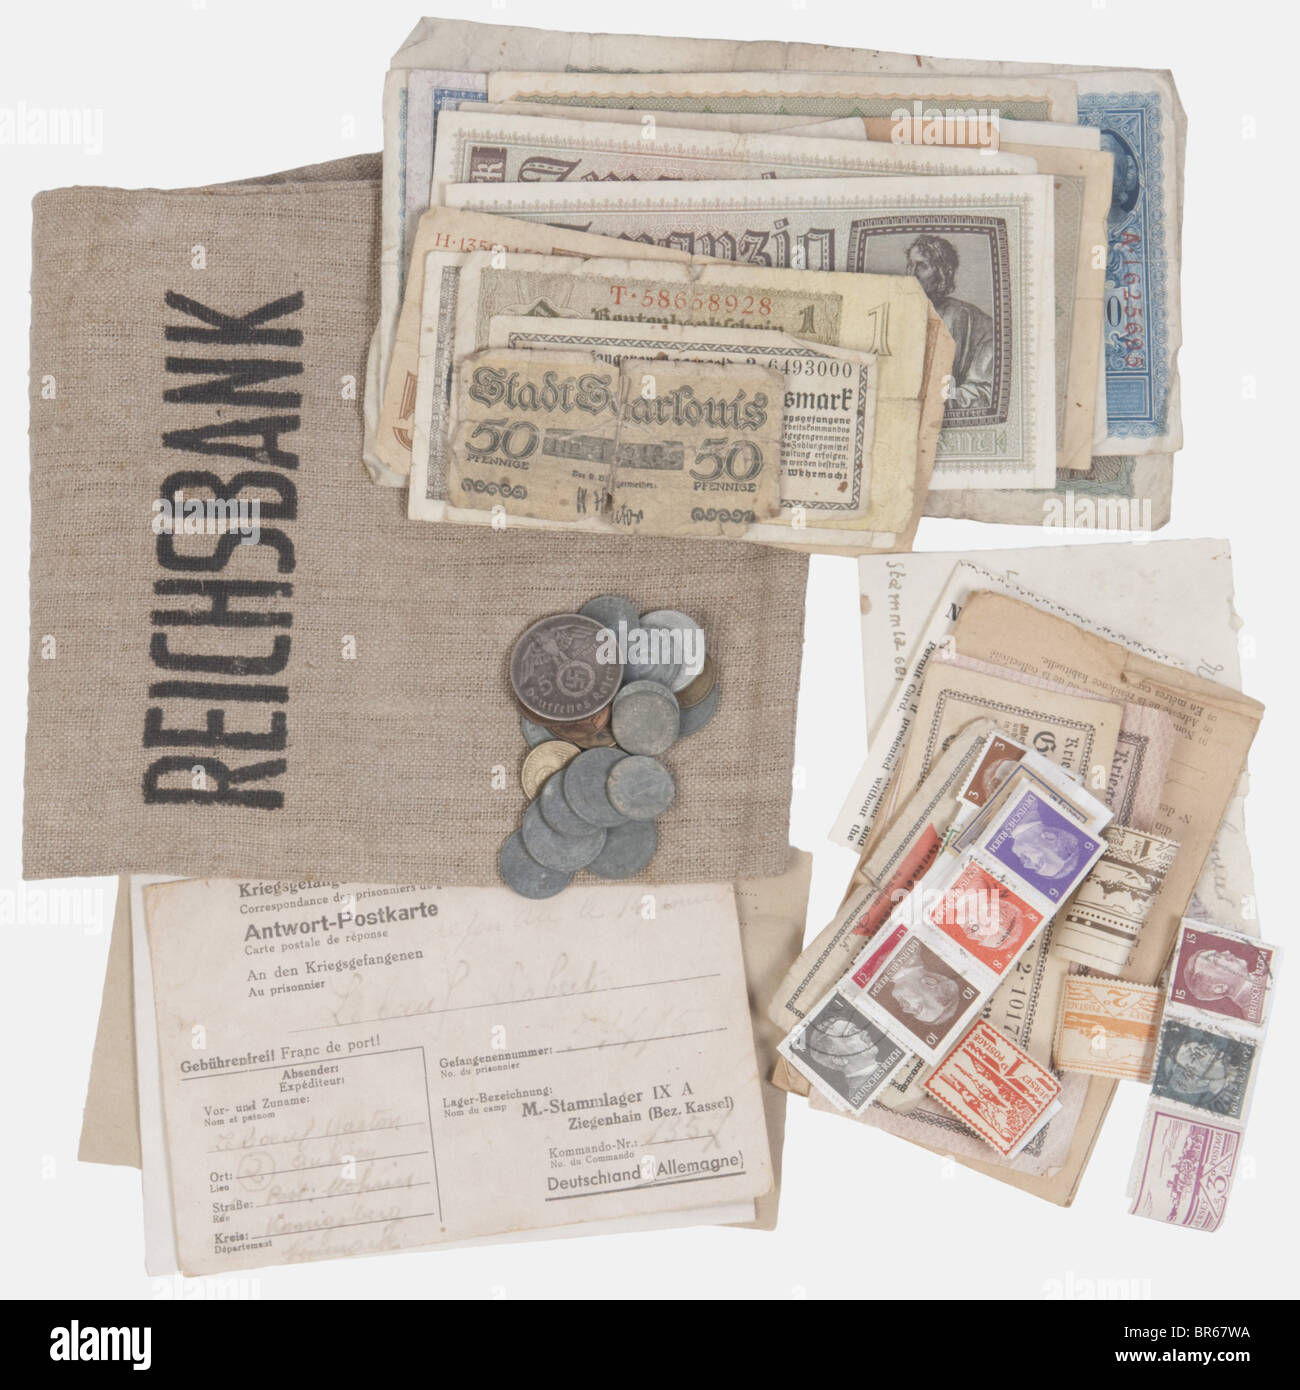 WEHRMACHT, Ensemble de pièces de monnaie et billets, totalisant environ une cinquantaine d'éléments, dont des billets de camps de prisonniers, des courriers de prisonniers de guerre, des timbres-poste et une pochette en jute marquée 'Reichsbahn', , Stock Photo